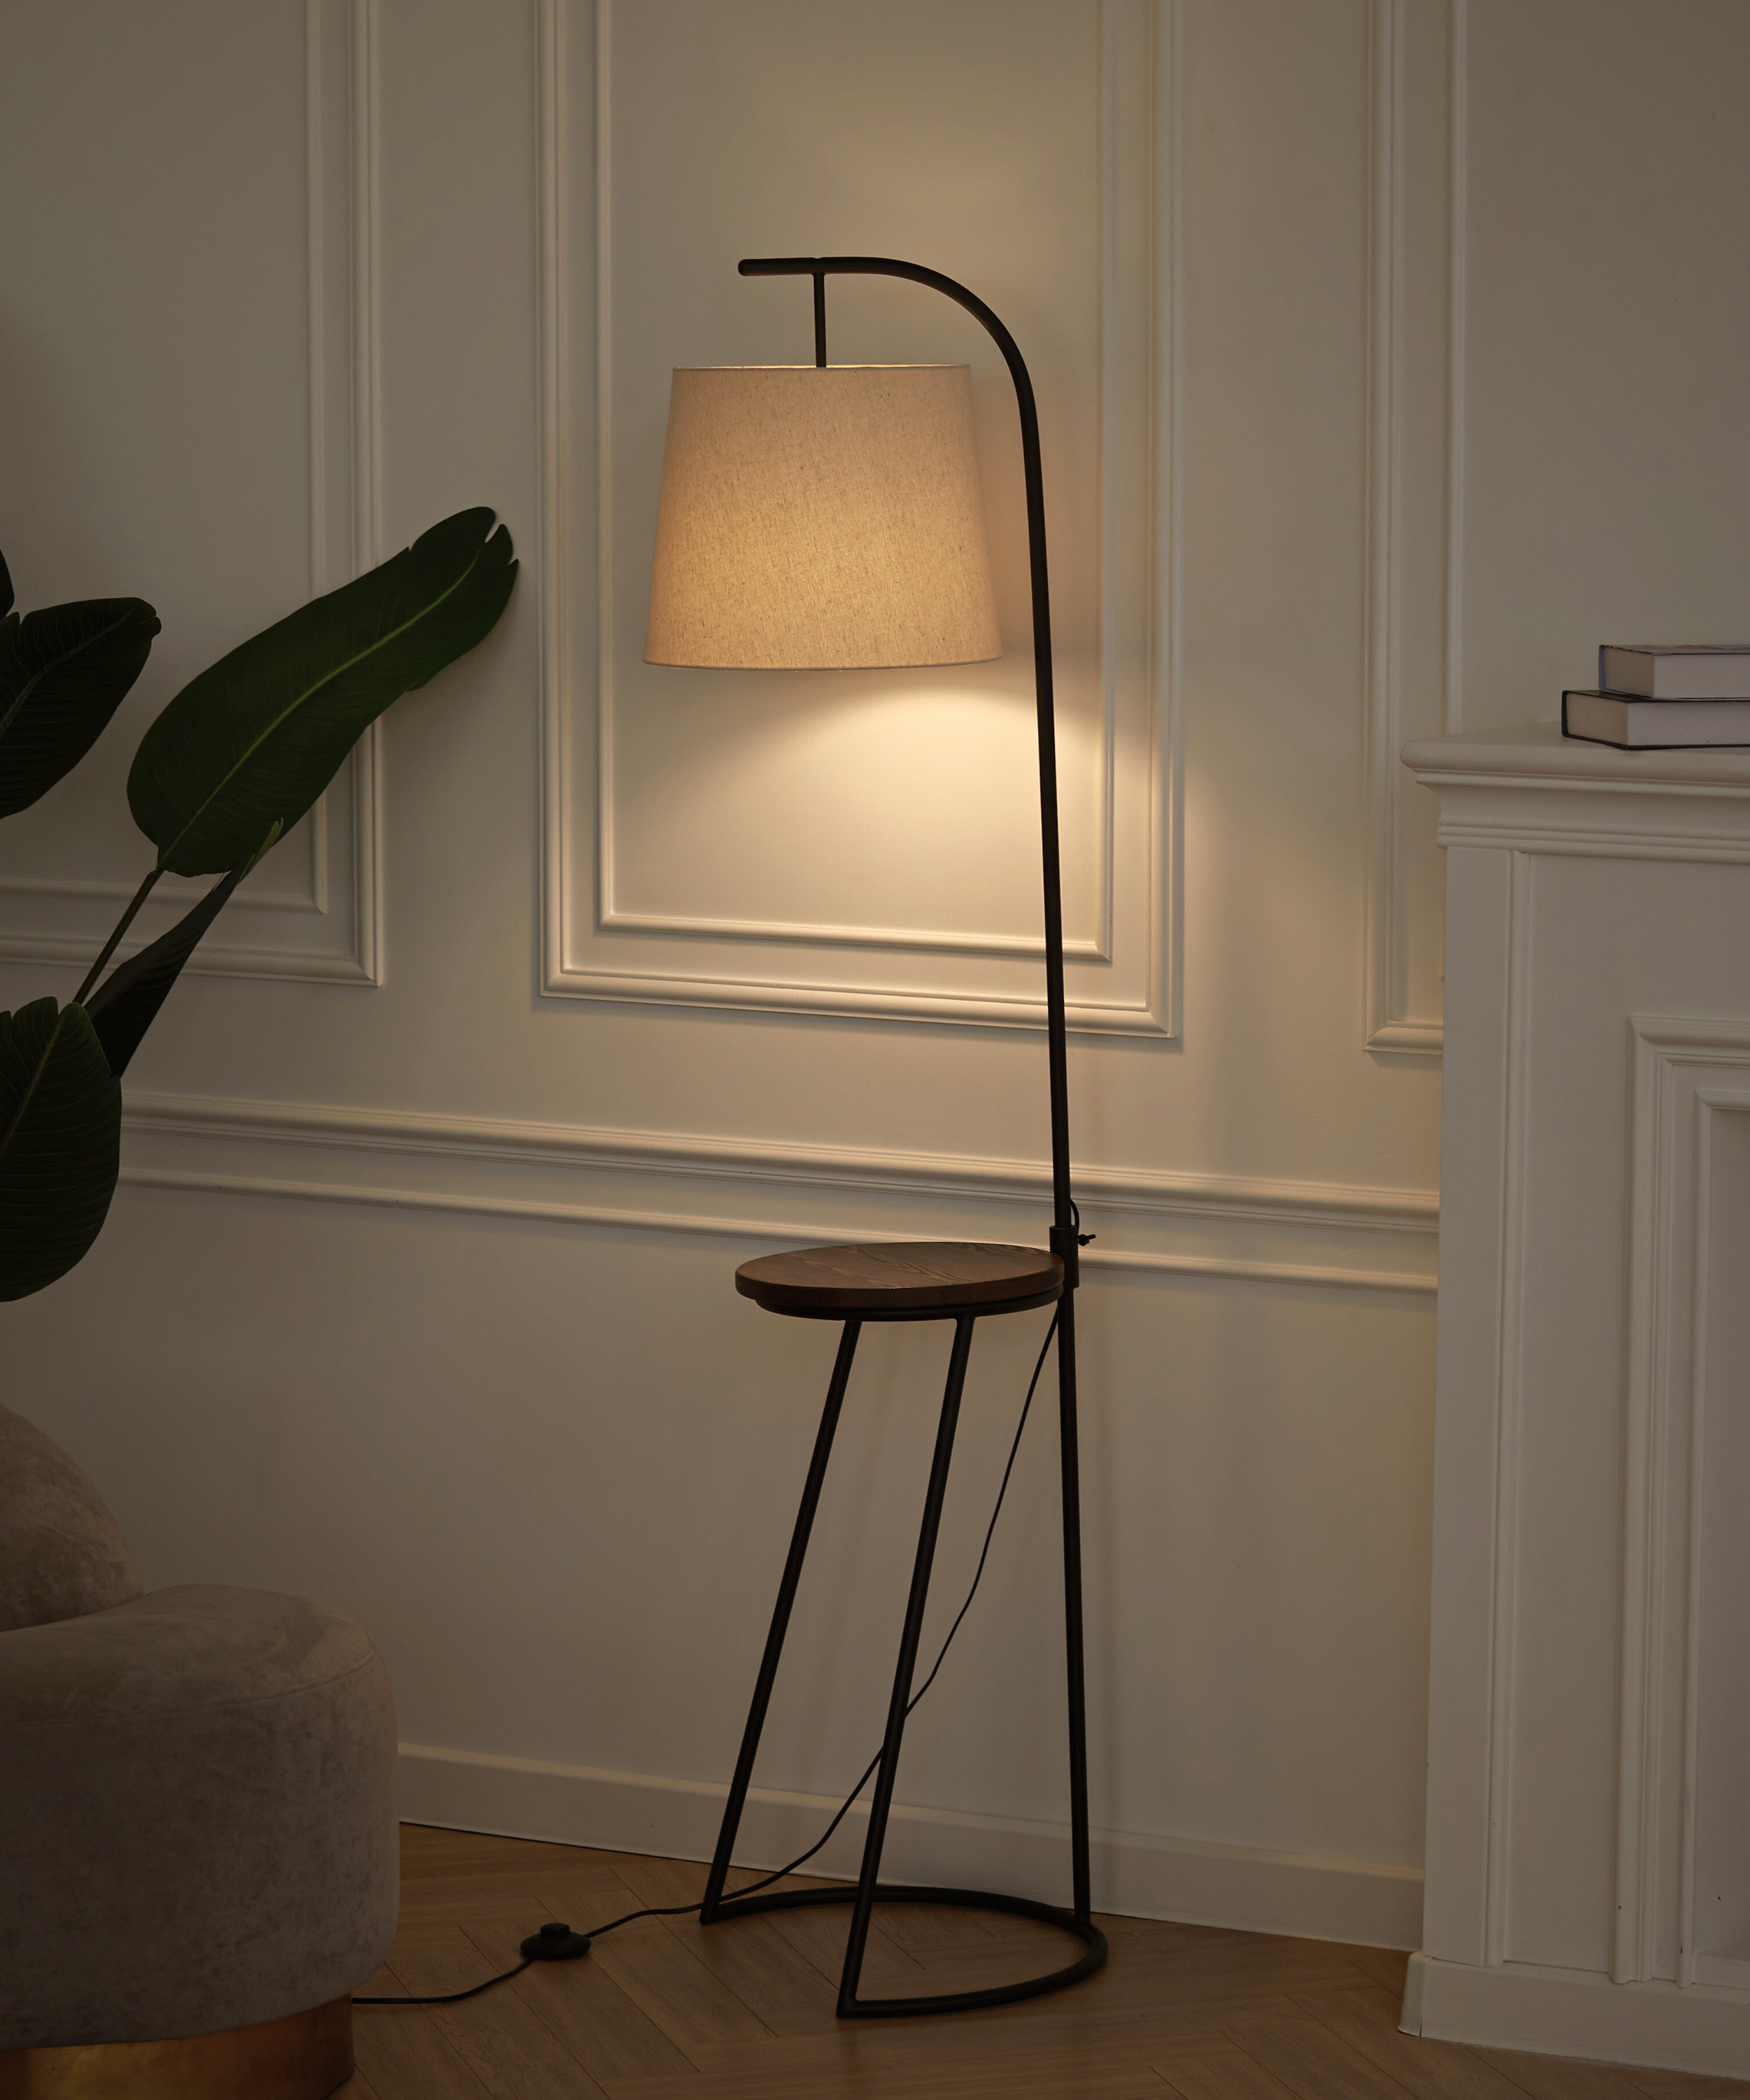 Идеи для дизайна интерьера: напольные светильники и торшеры